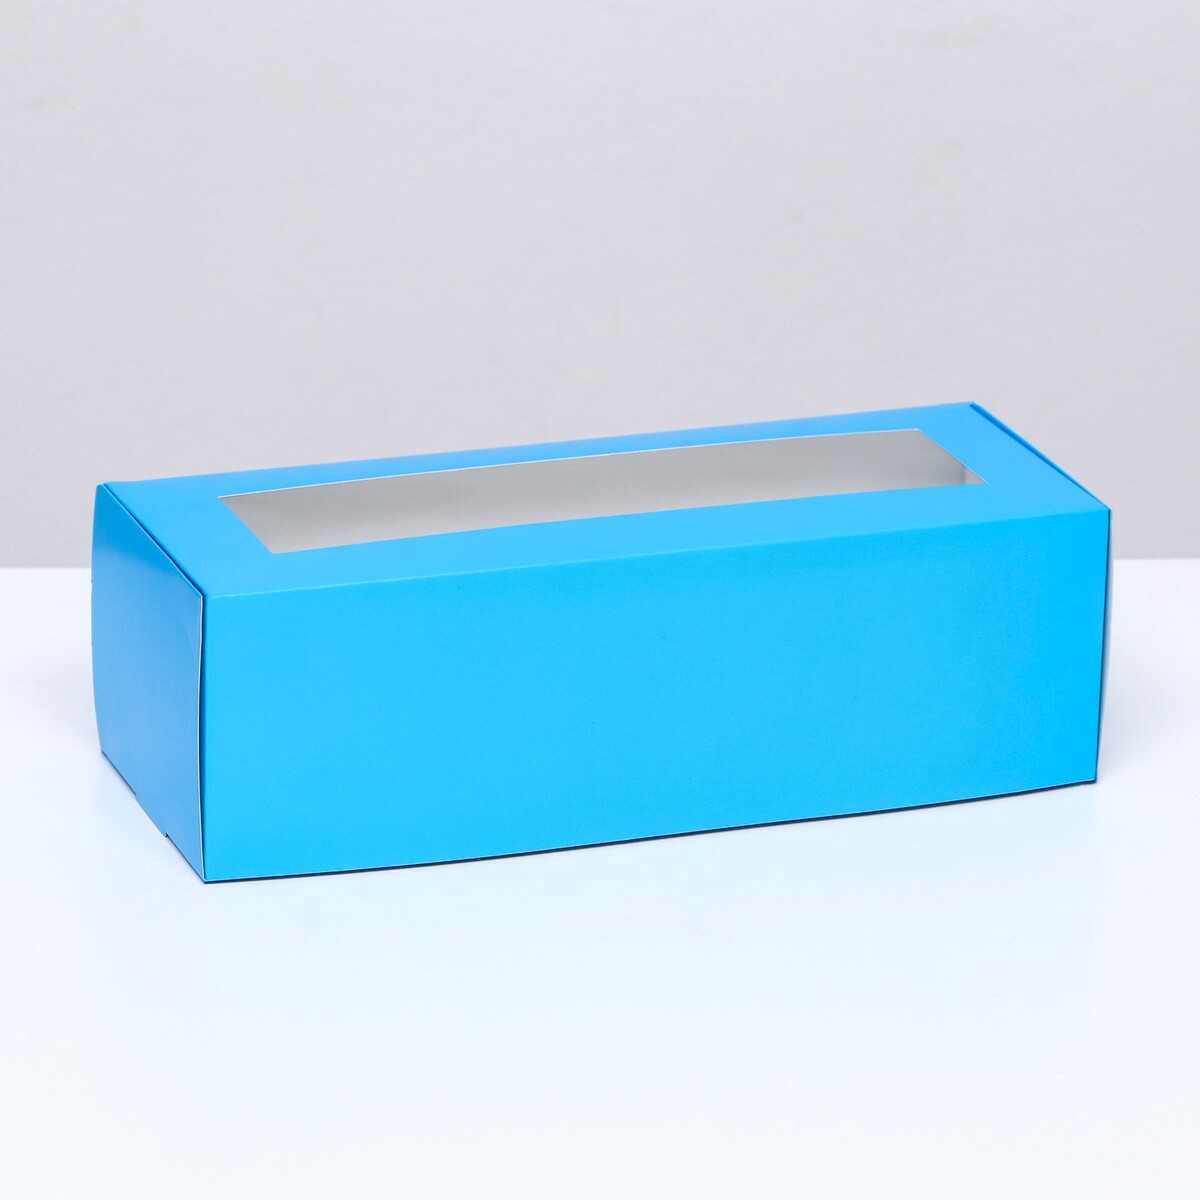 Коробка складная с окном под рулет, голубая, 26 х 10 х 8 см